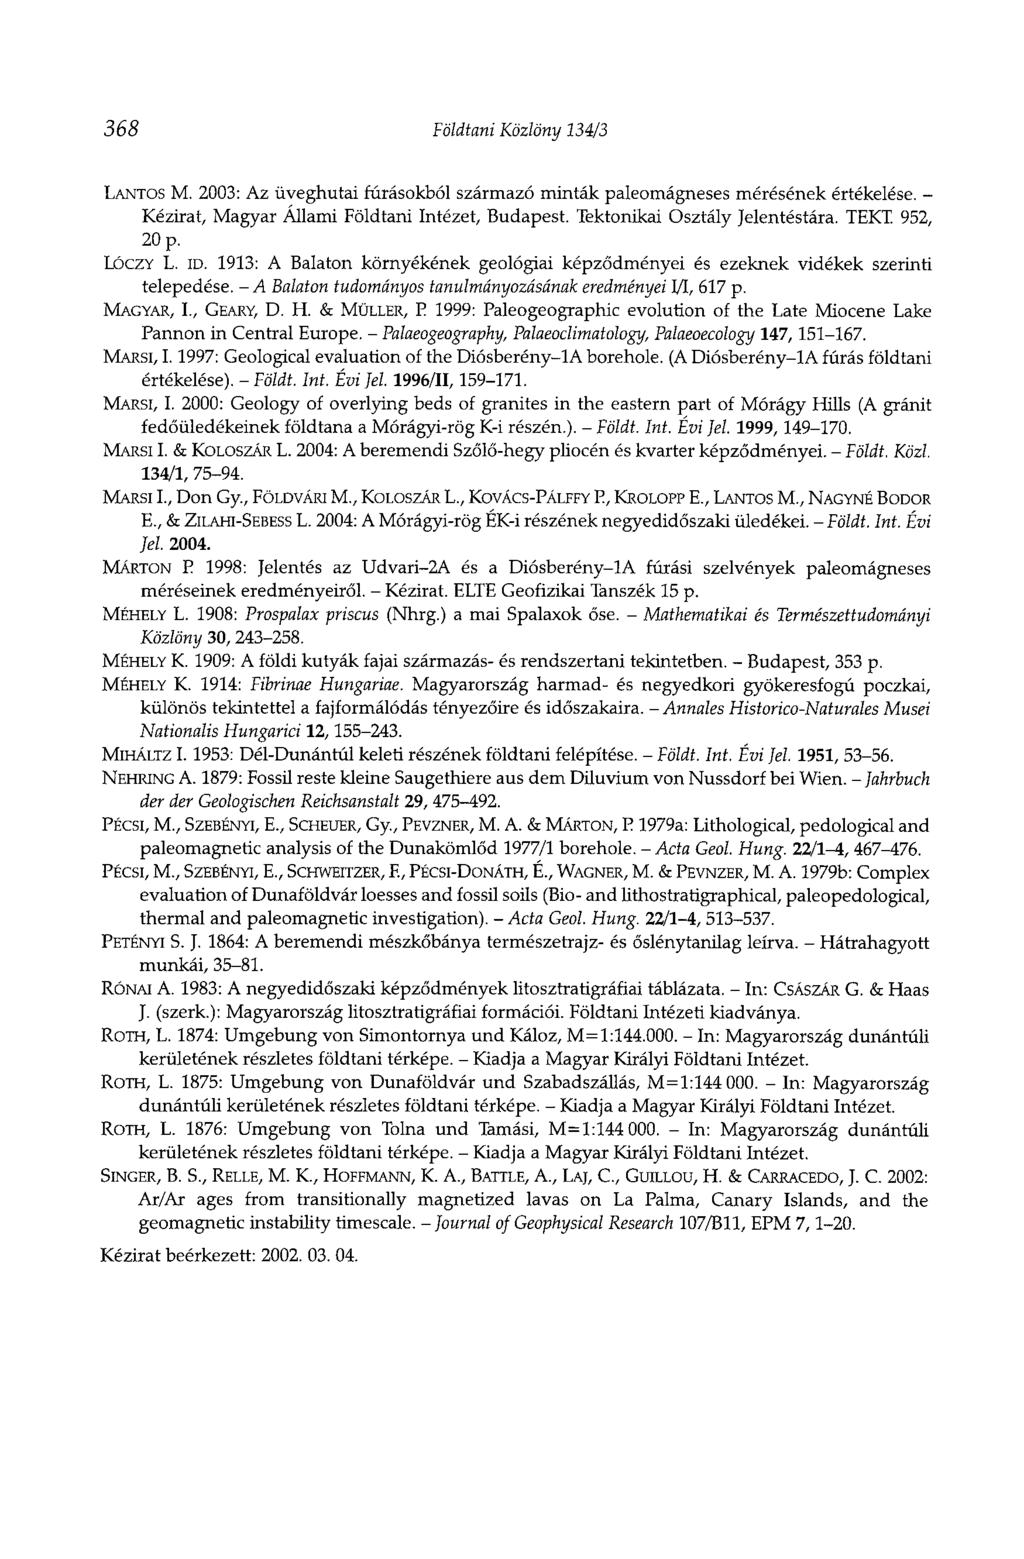 368 Földtani Közlöny 134/3 LANTOS M. 2003: Az üveghutai fúrásokból származó minták paleomágneses mérésének értékelése. - Kézirat, Magyar Állami Földtani Intézet, Budapest.